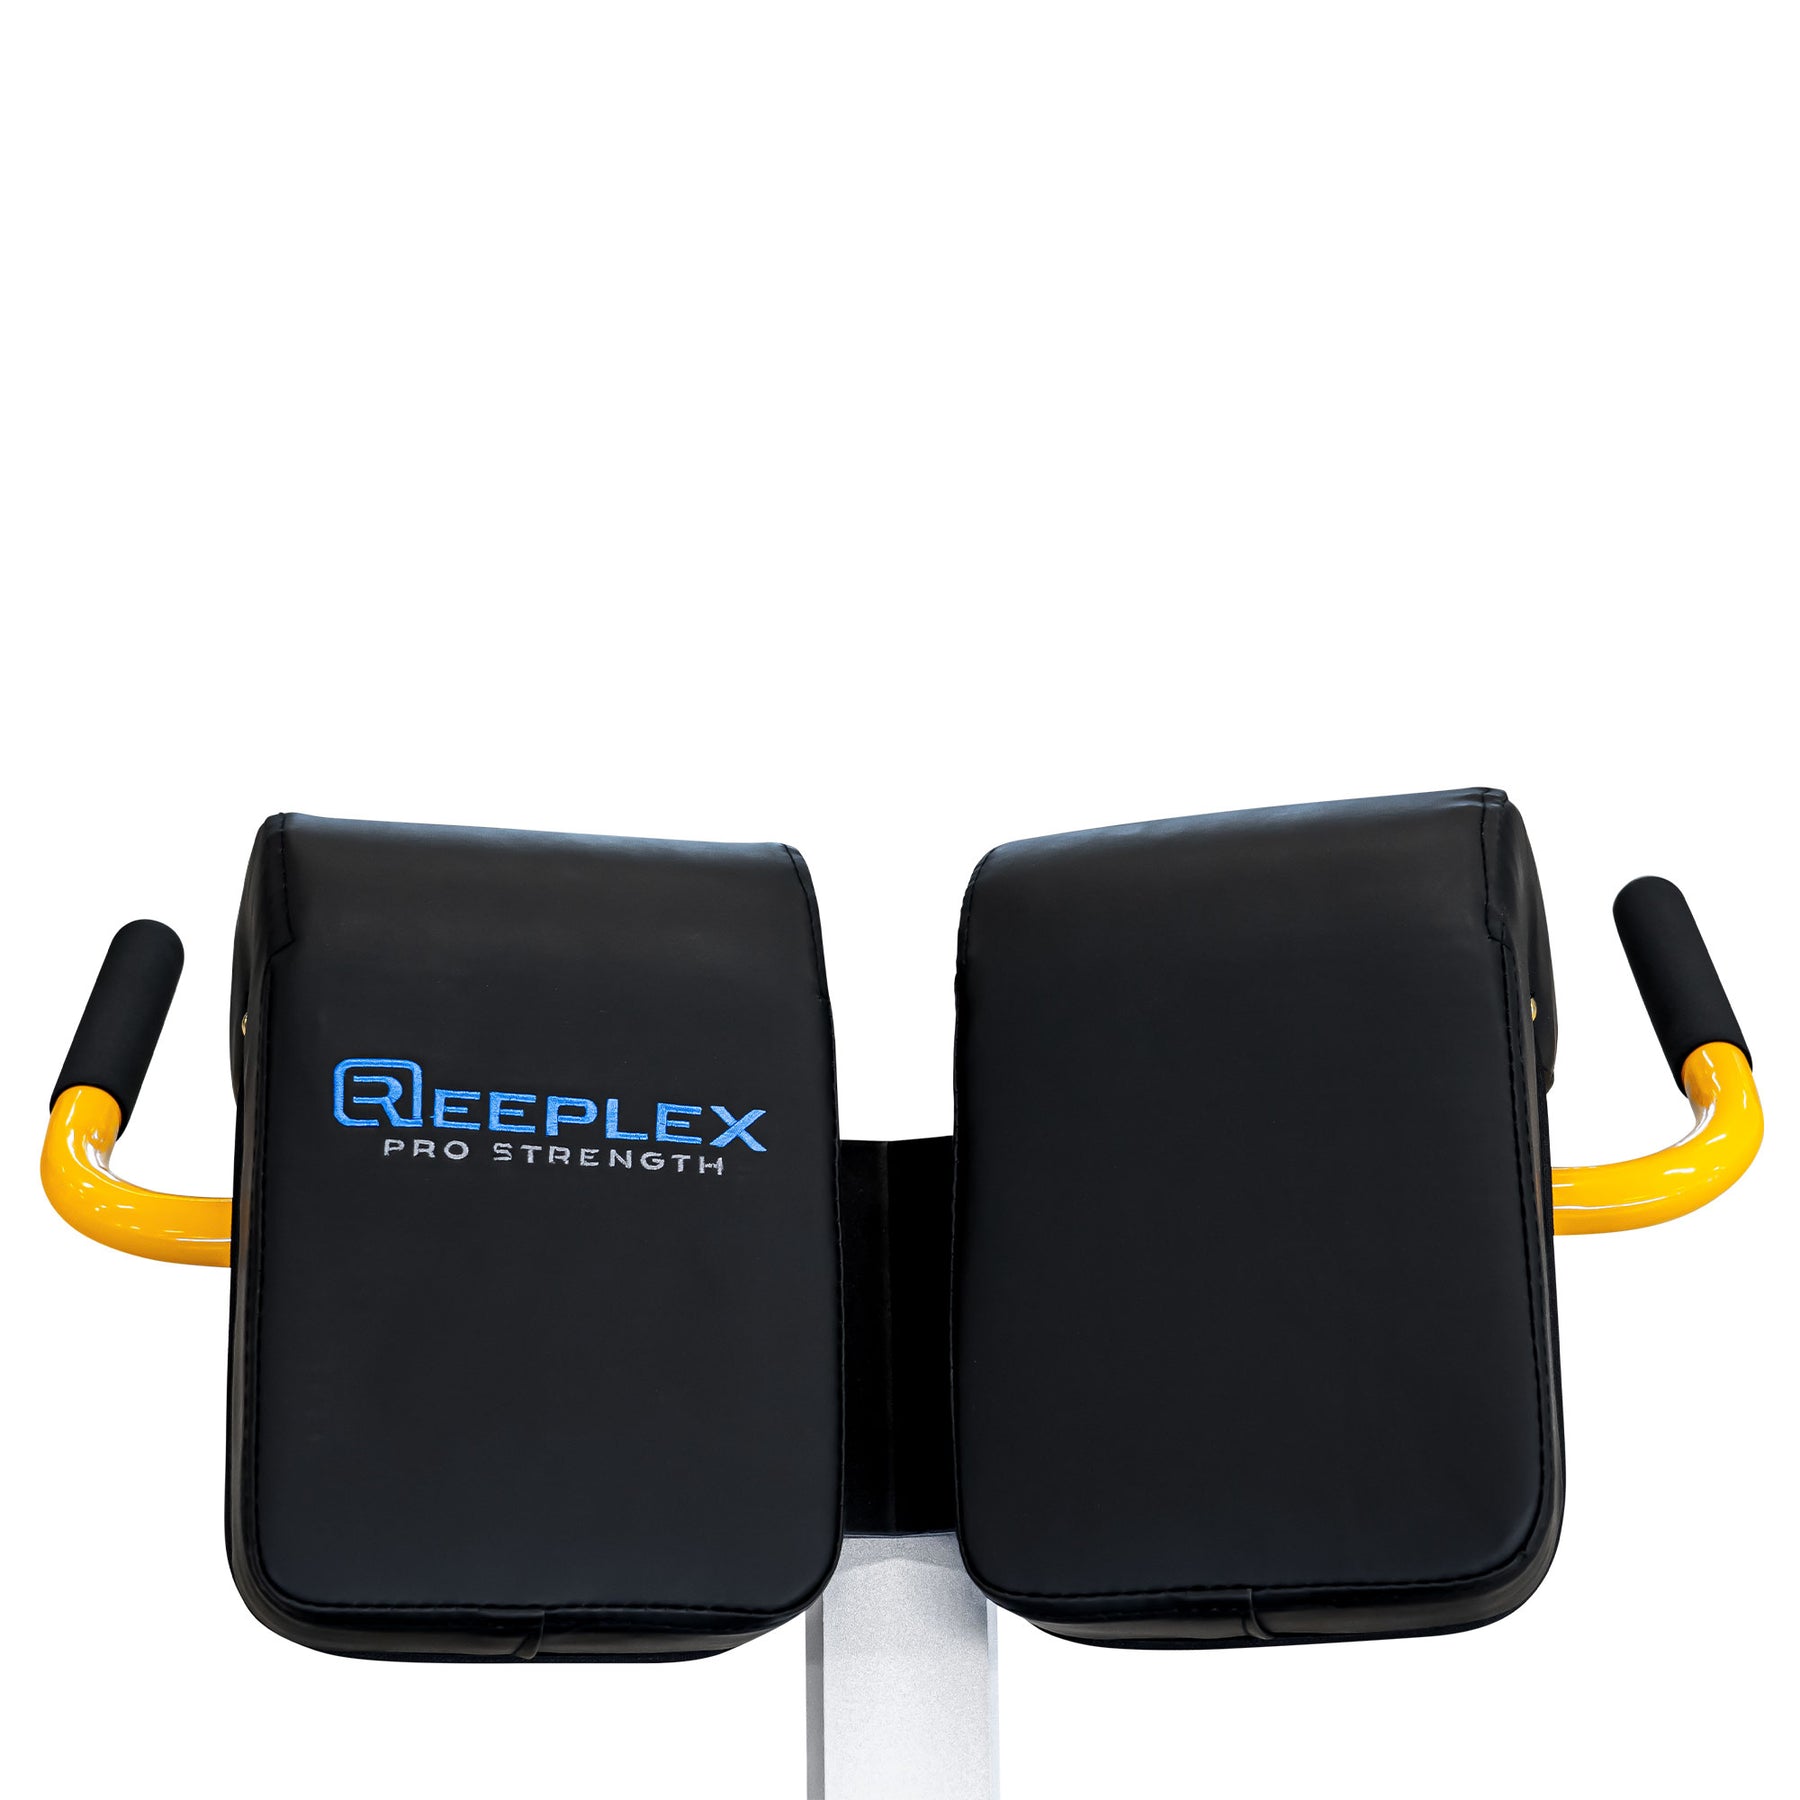 Reeplex 45 Degree Hyper Extension pads close up